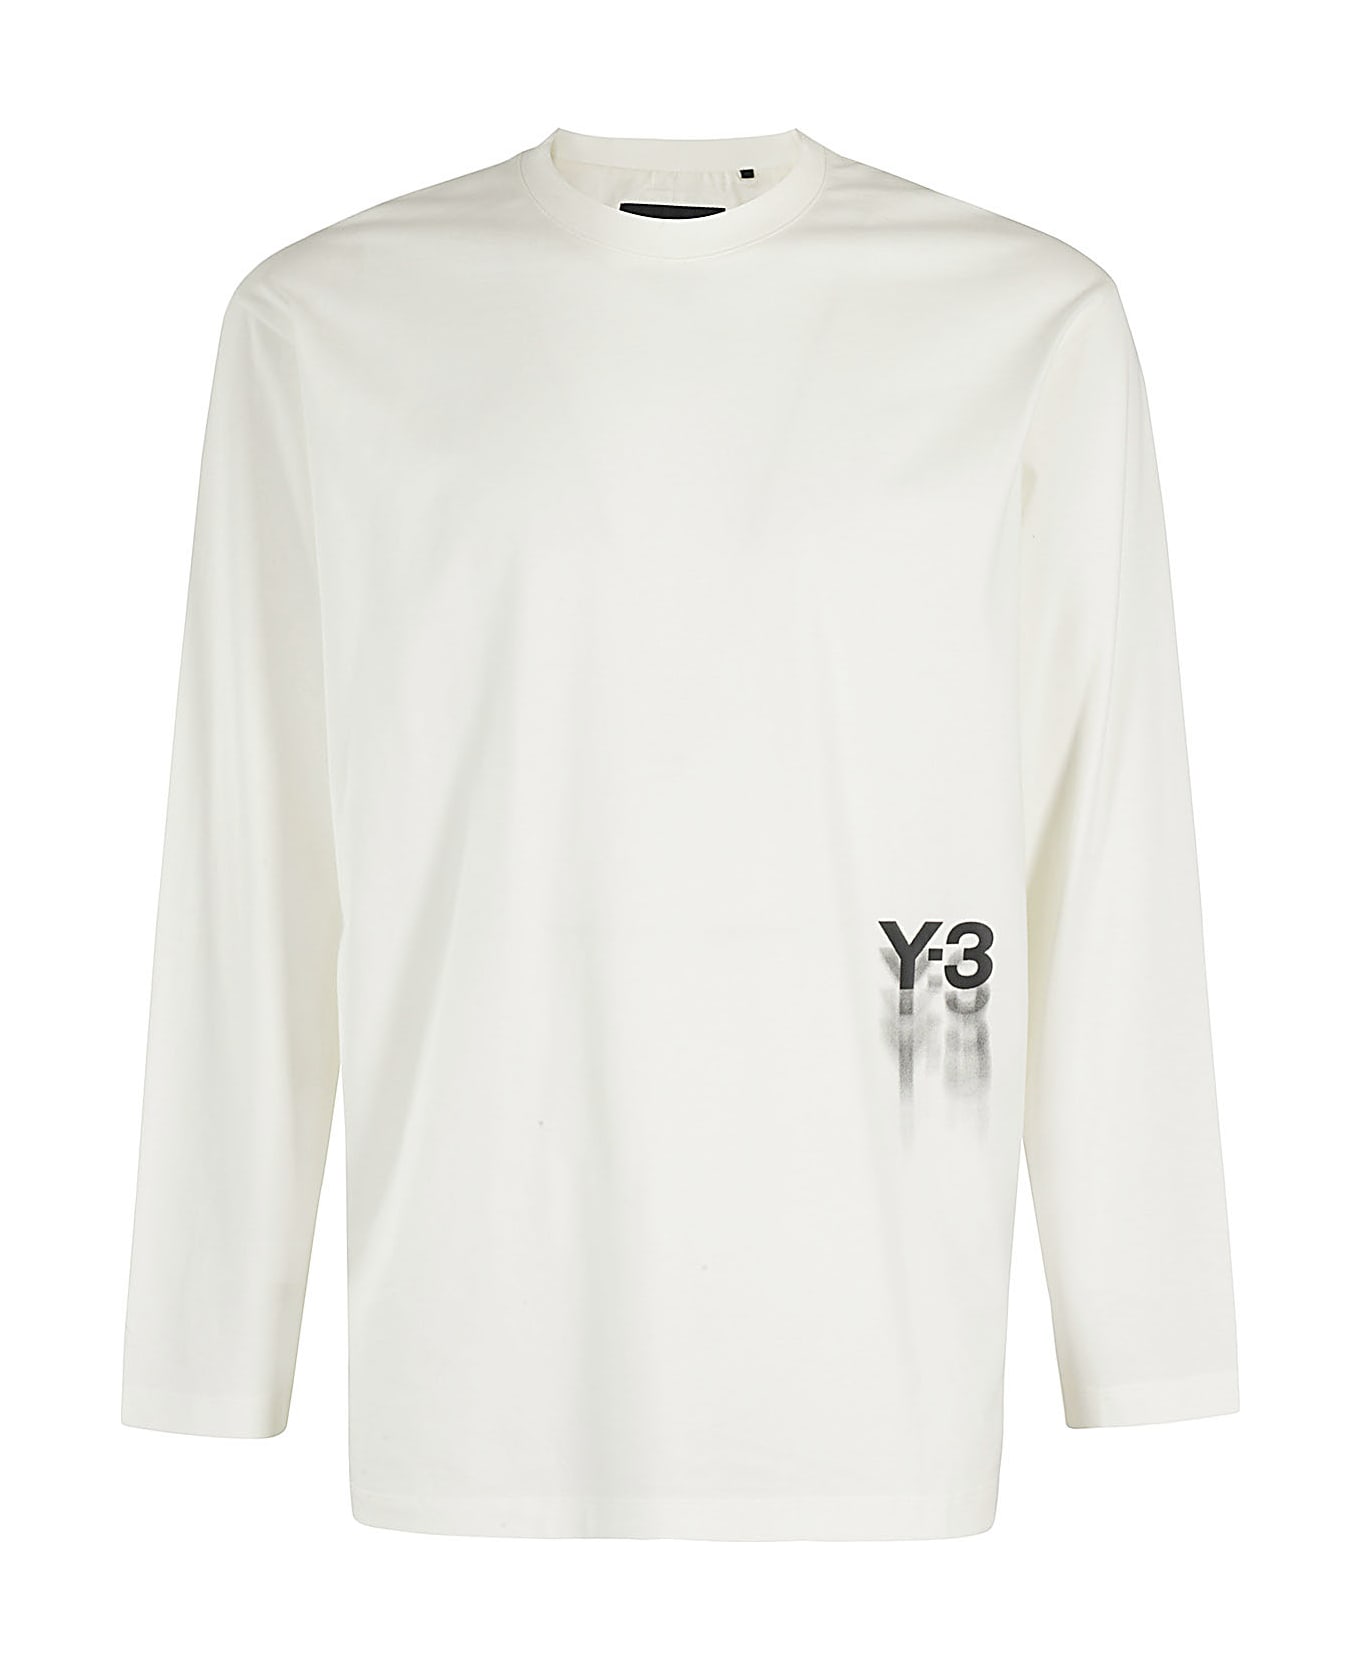 Y-3 Gfx Ls Tee - White ジャケット